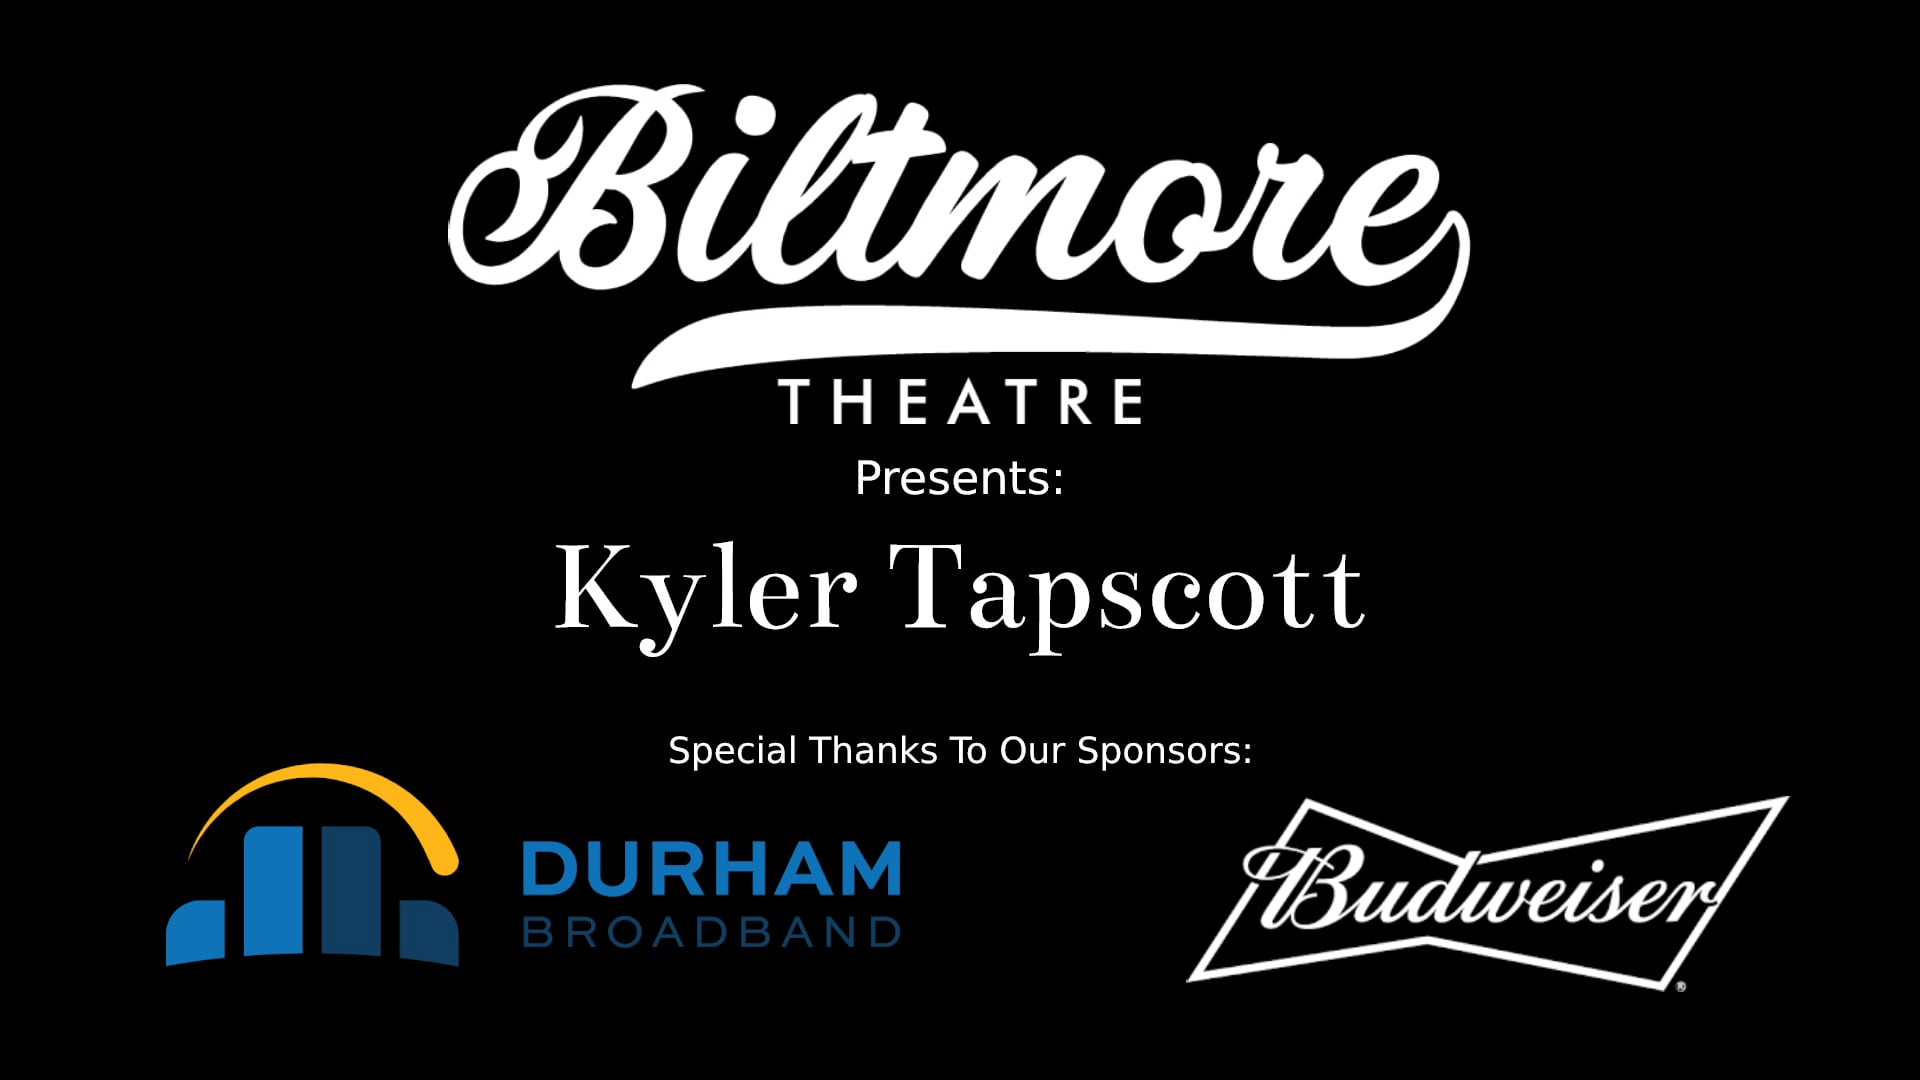 The Biltmore Theatre Presents: Kyler Tapscott